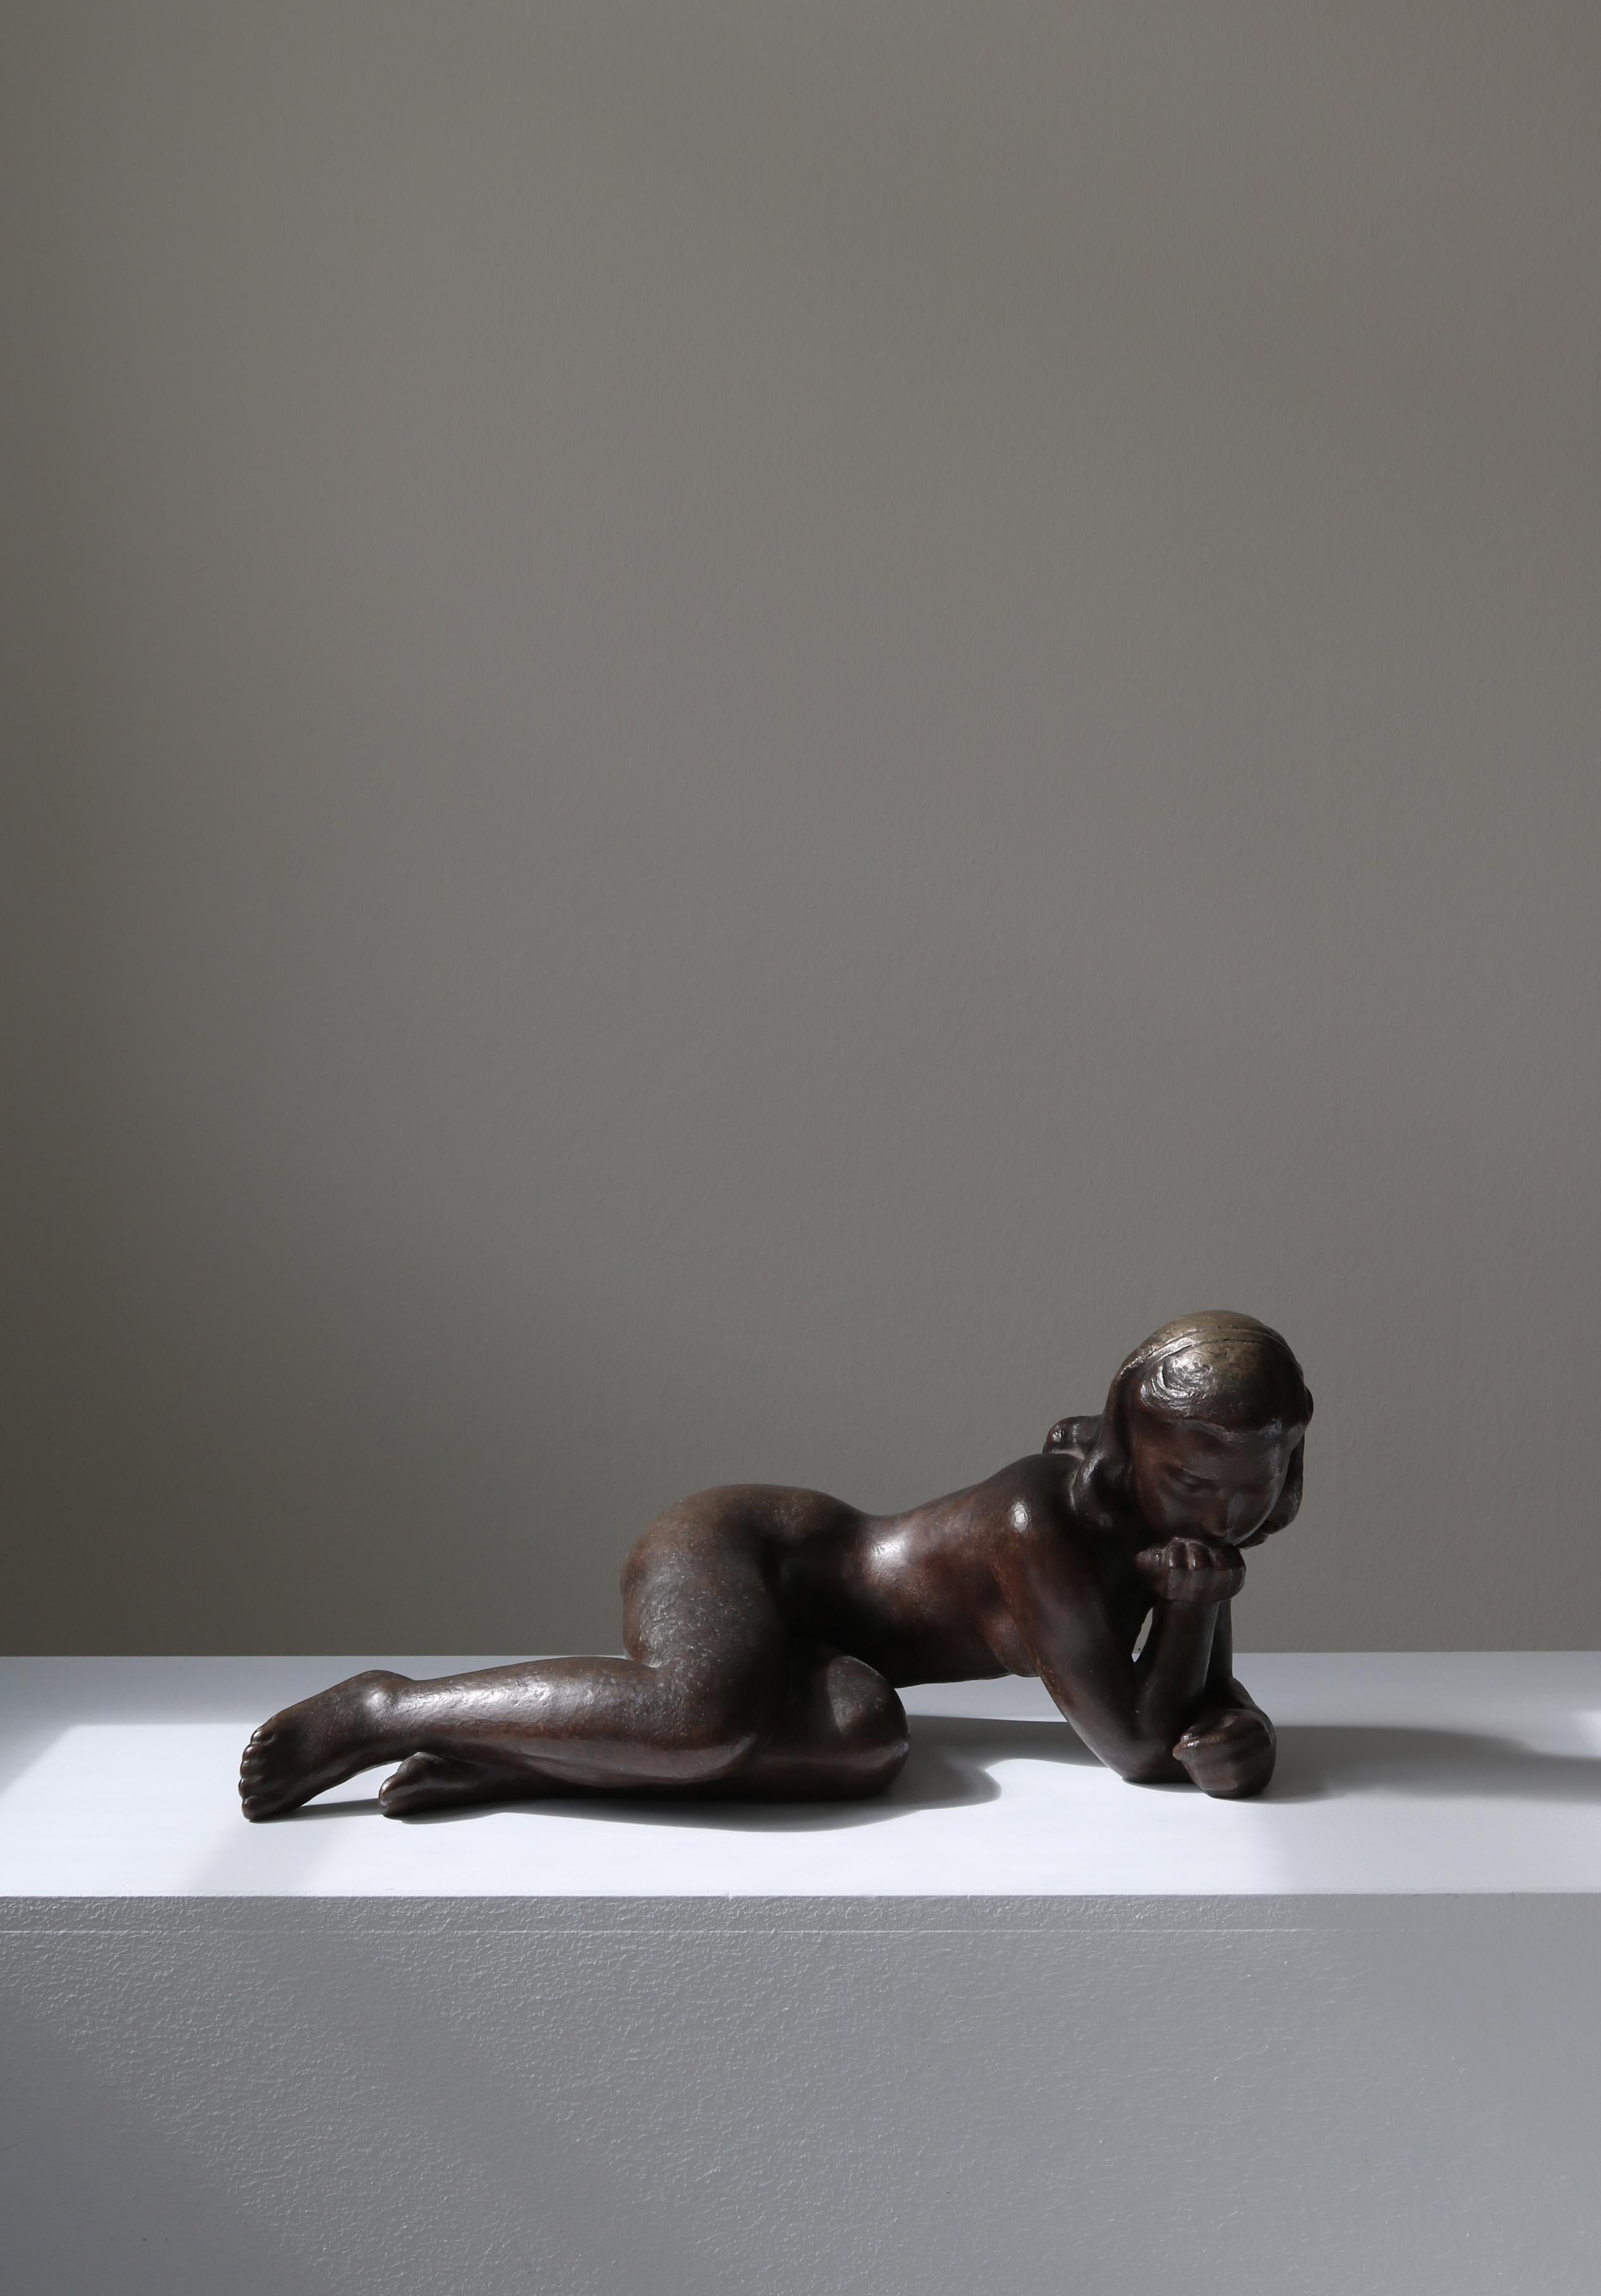 Große gegossene Bronzeskulptur des dänischen Künstlers Johannes Hansen, die ein junges Mädchen darstellt, das in Gedanken versunken ist. Die Skulptur wurde in den 1940er Jahren in der Bronzegießerei 